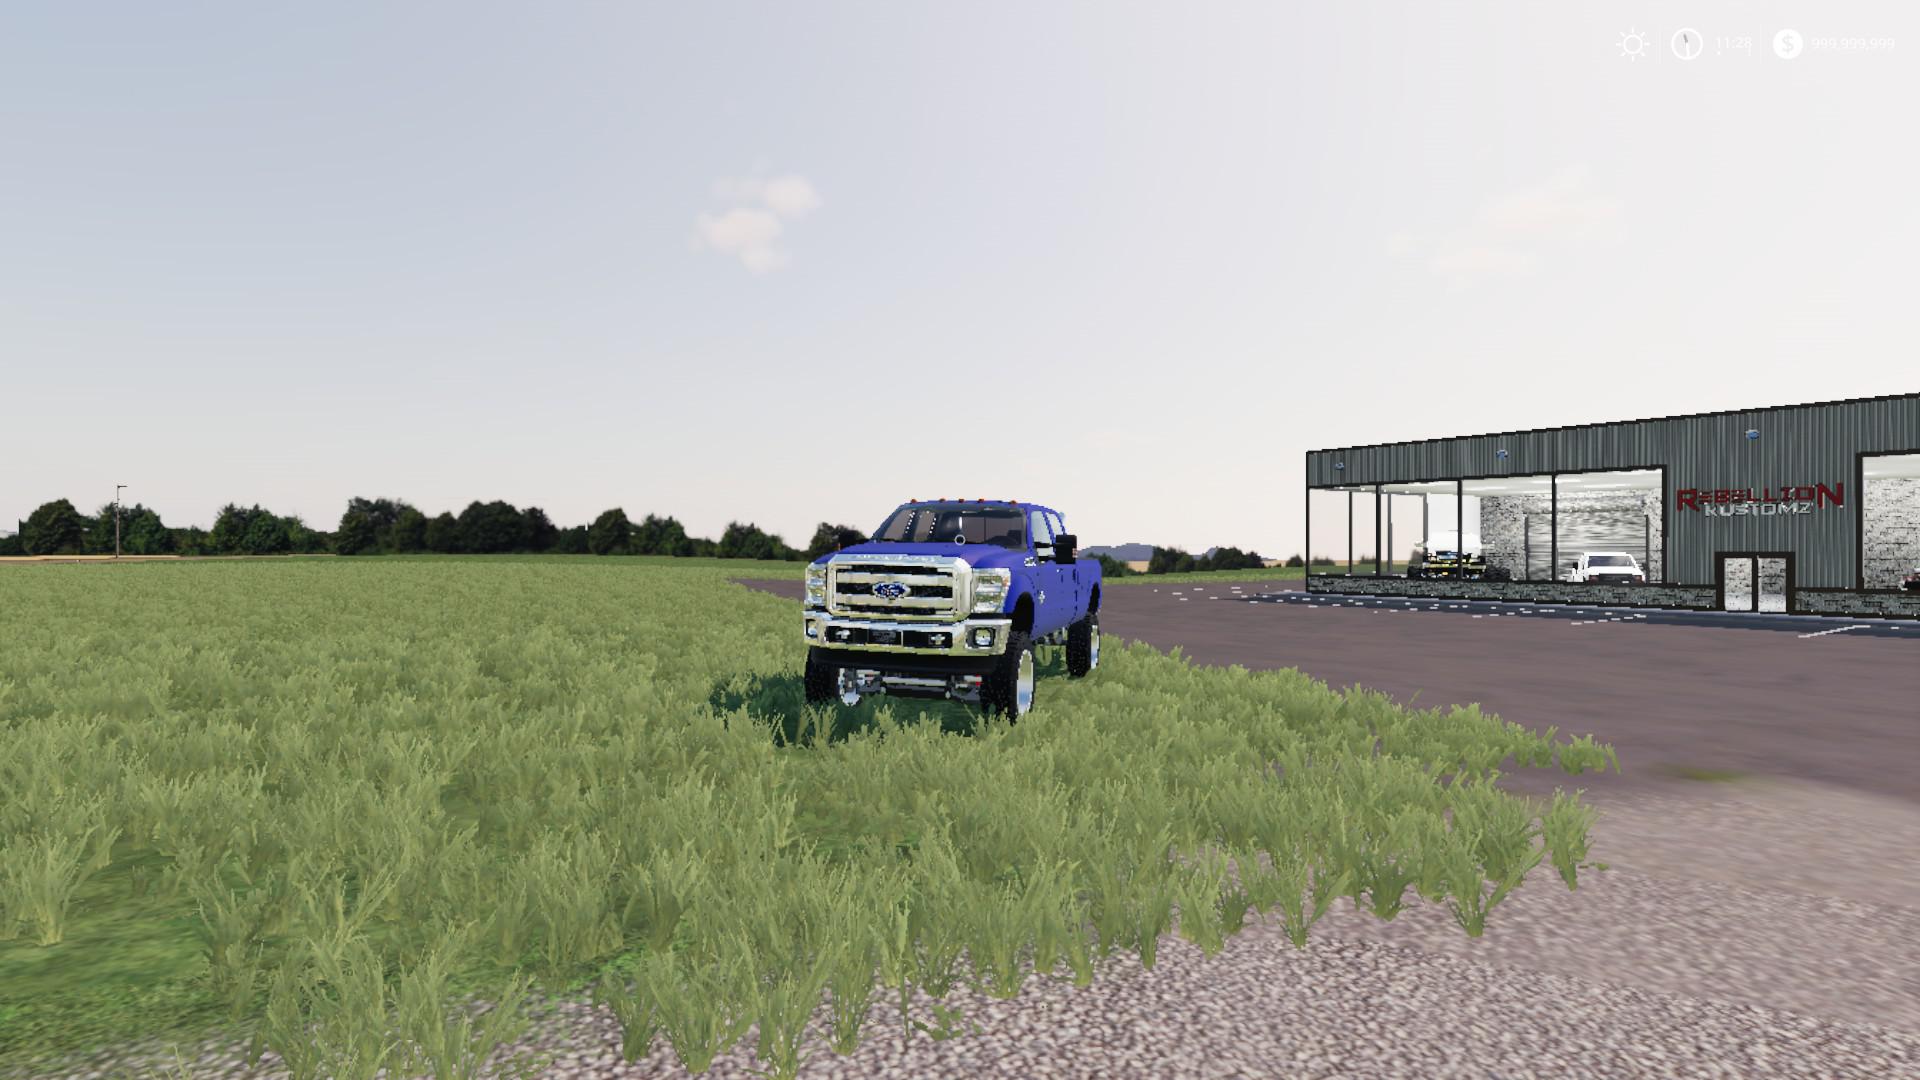 farming simulator 2011 mods